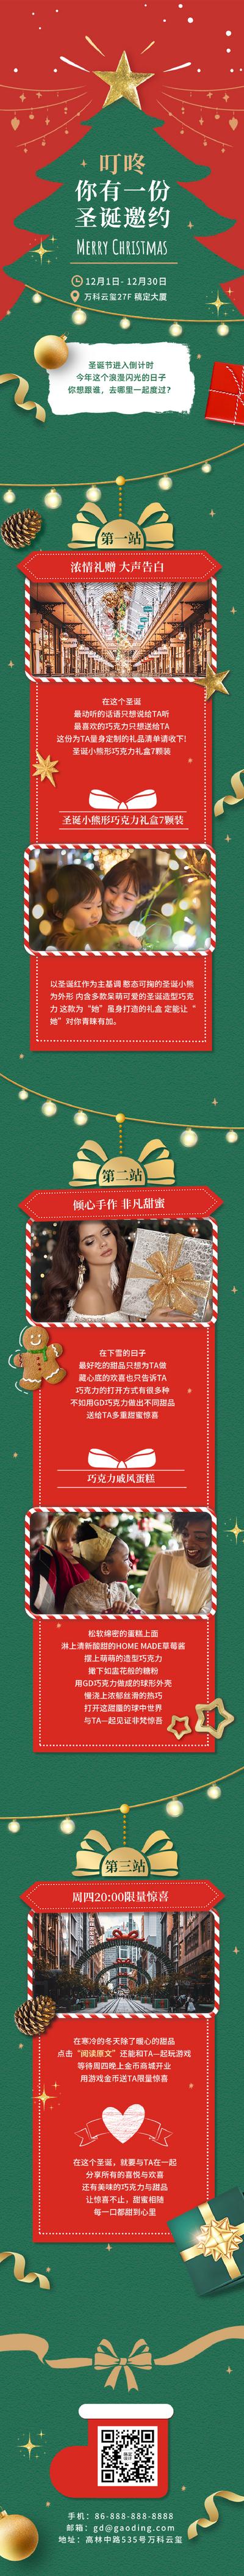 南门网 专题设计 长图 西方节日 圣诞节 邀请函 圣诞树